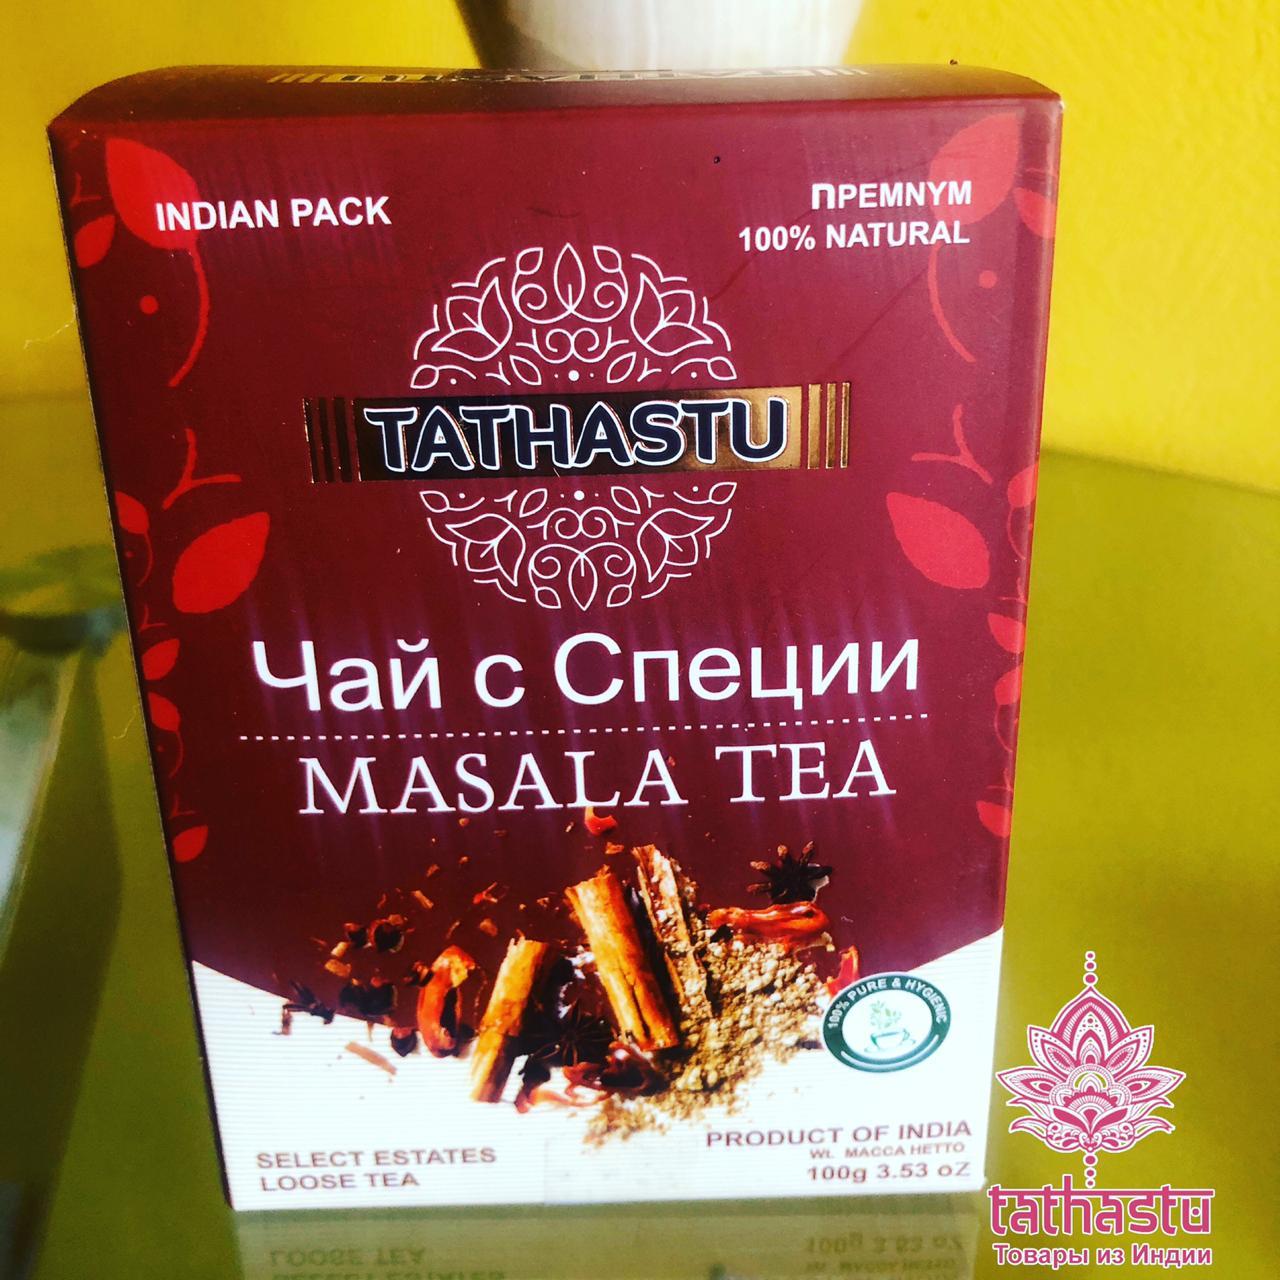 Масала чай Tathastu. Tathastu товары и индии